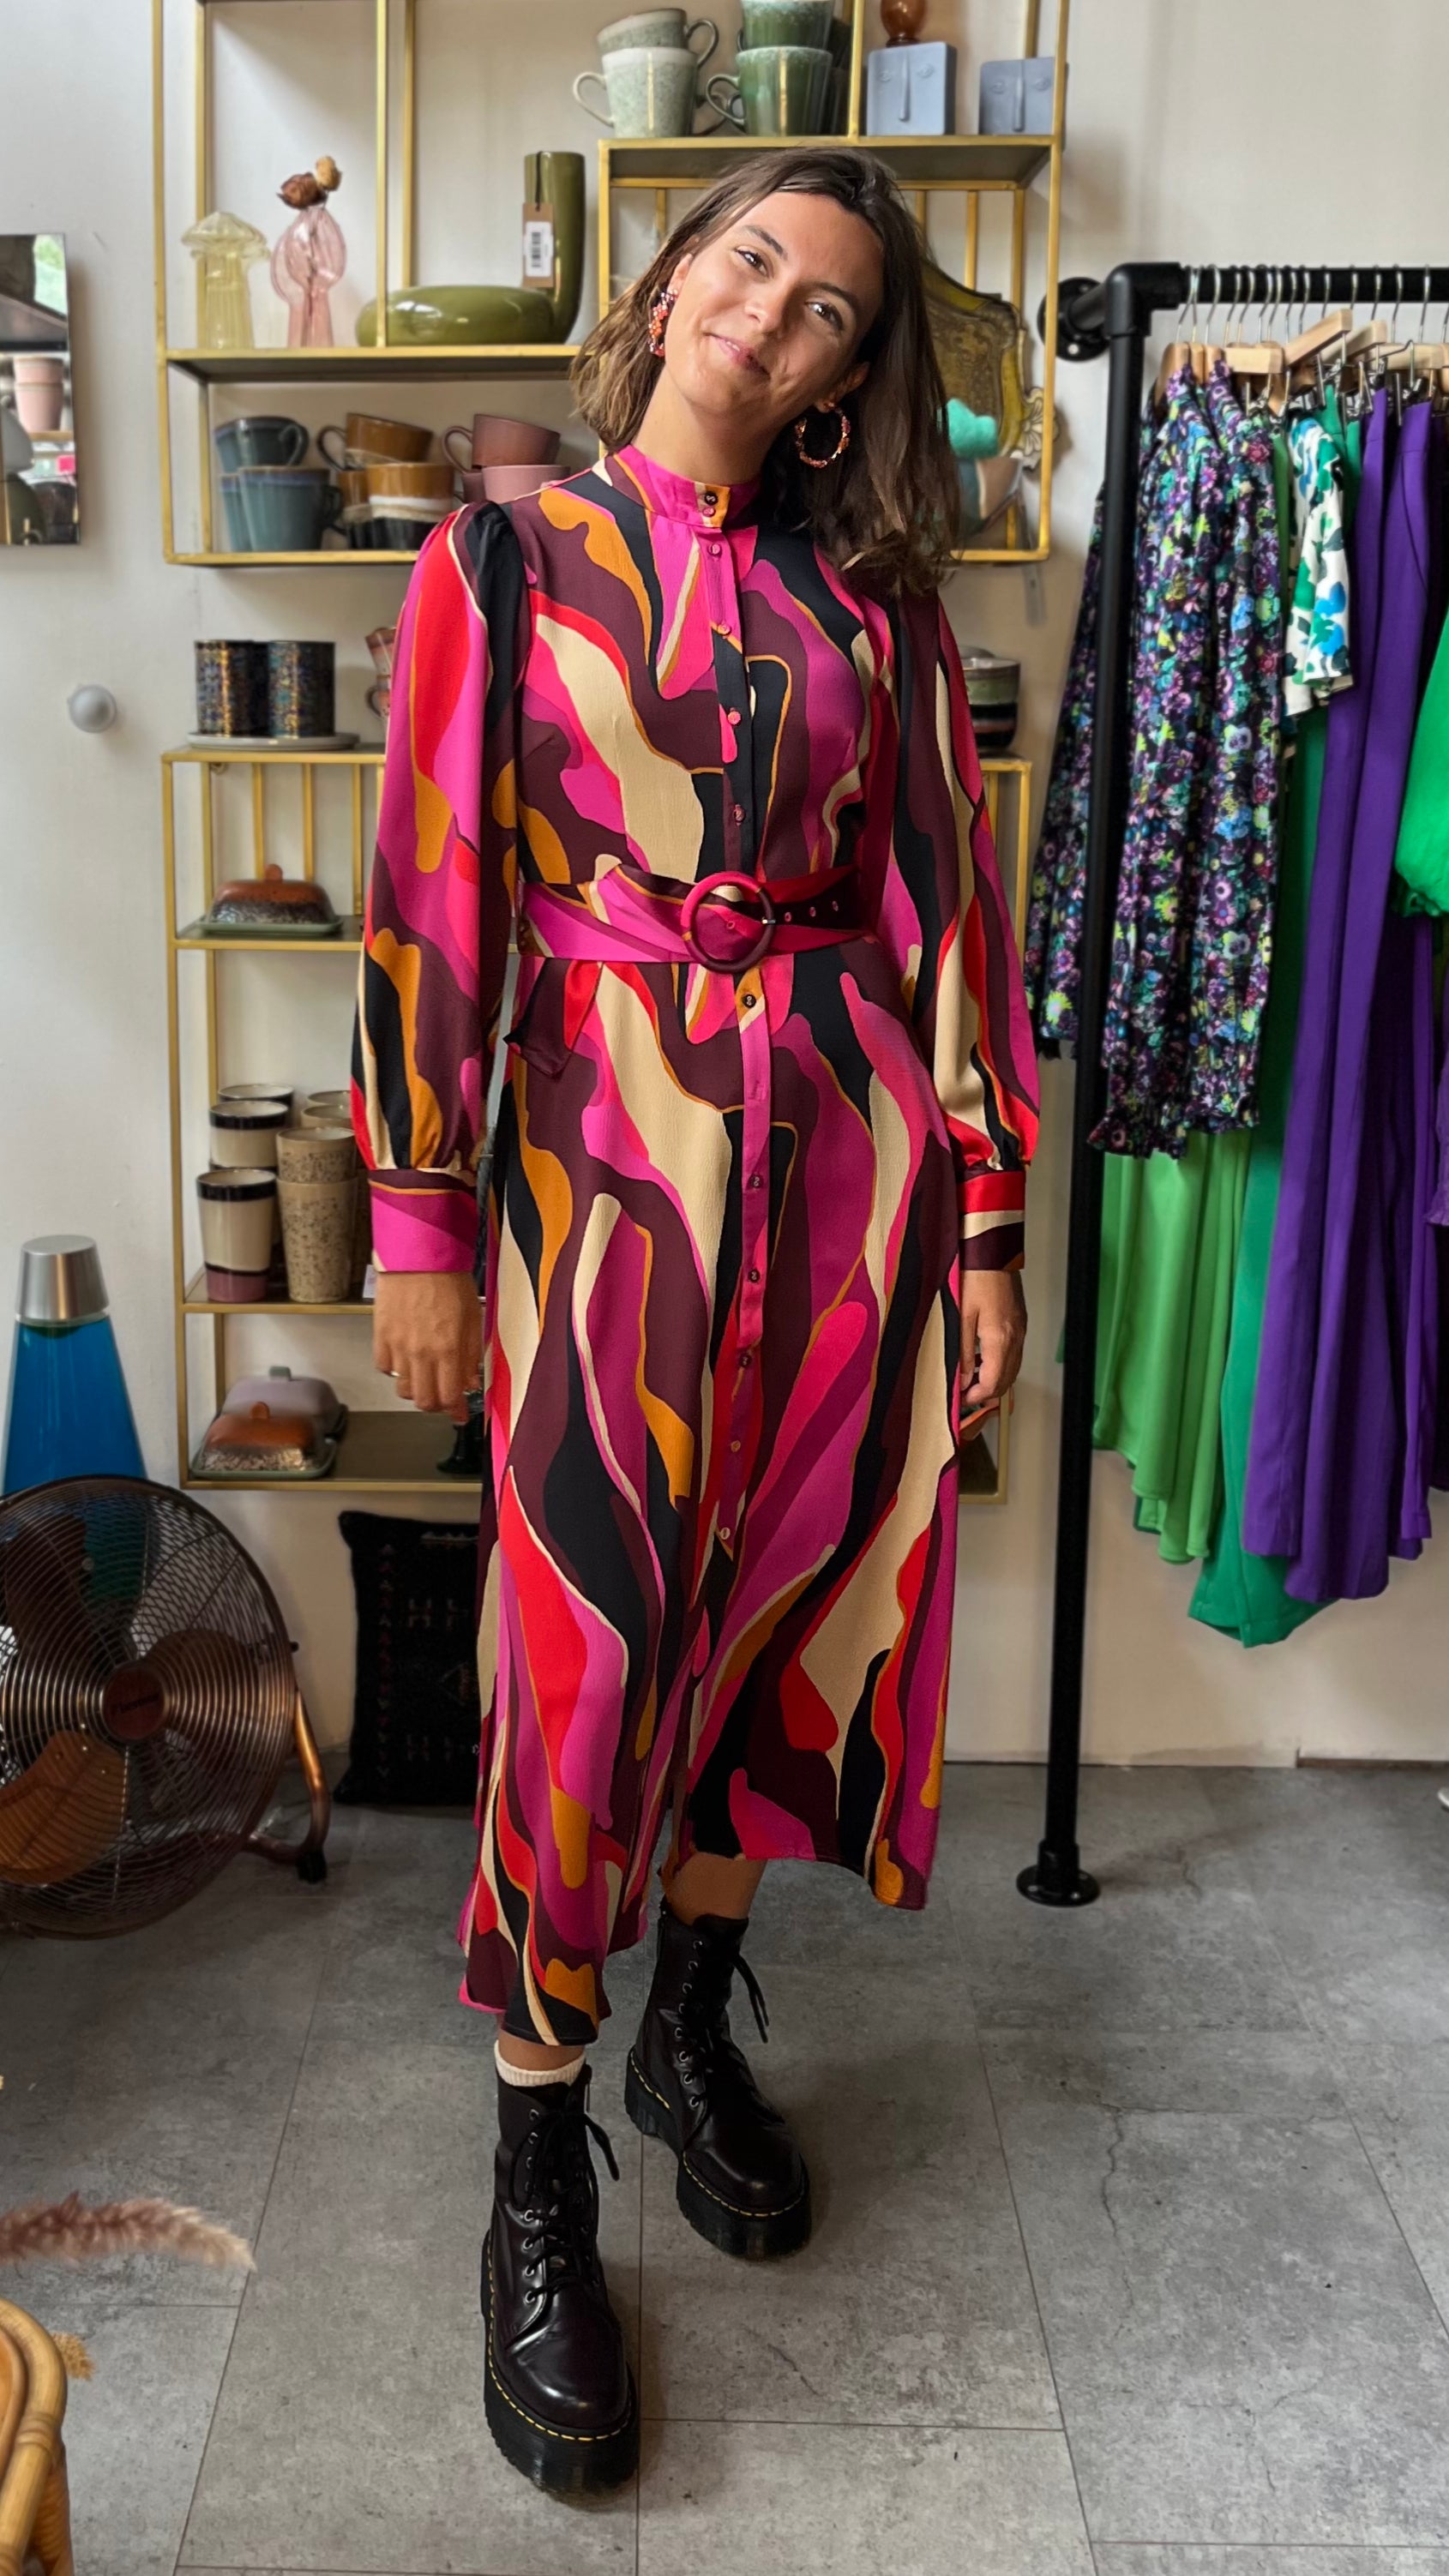 Y.A.S | FIGANA LS LONG SHIRT DRESS - ROSE VIOLET